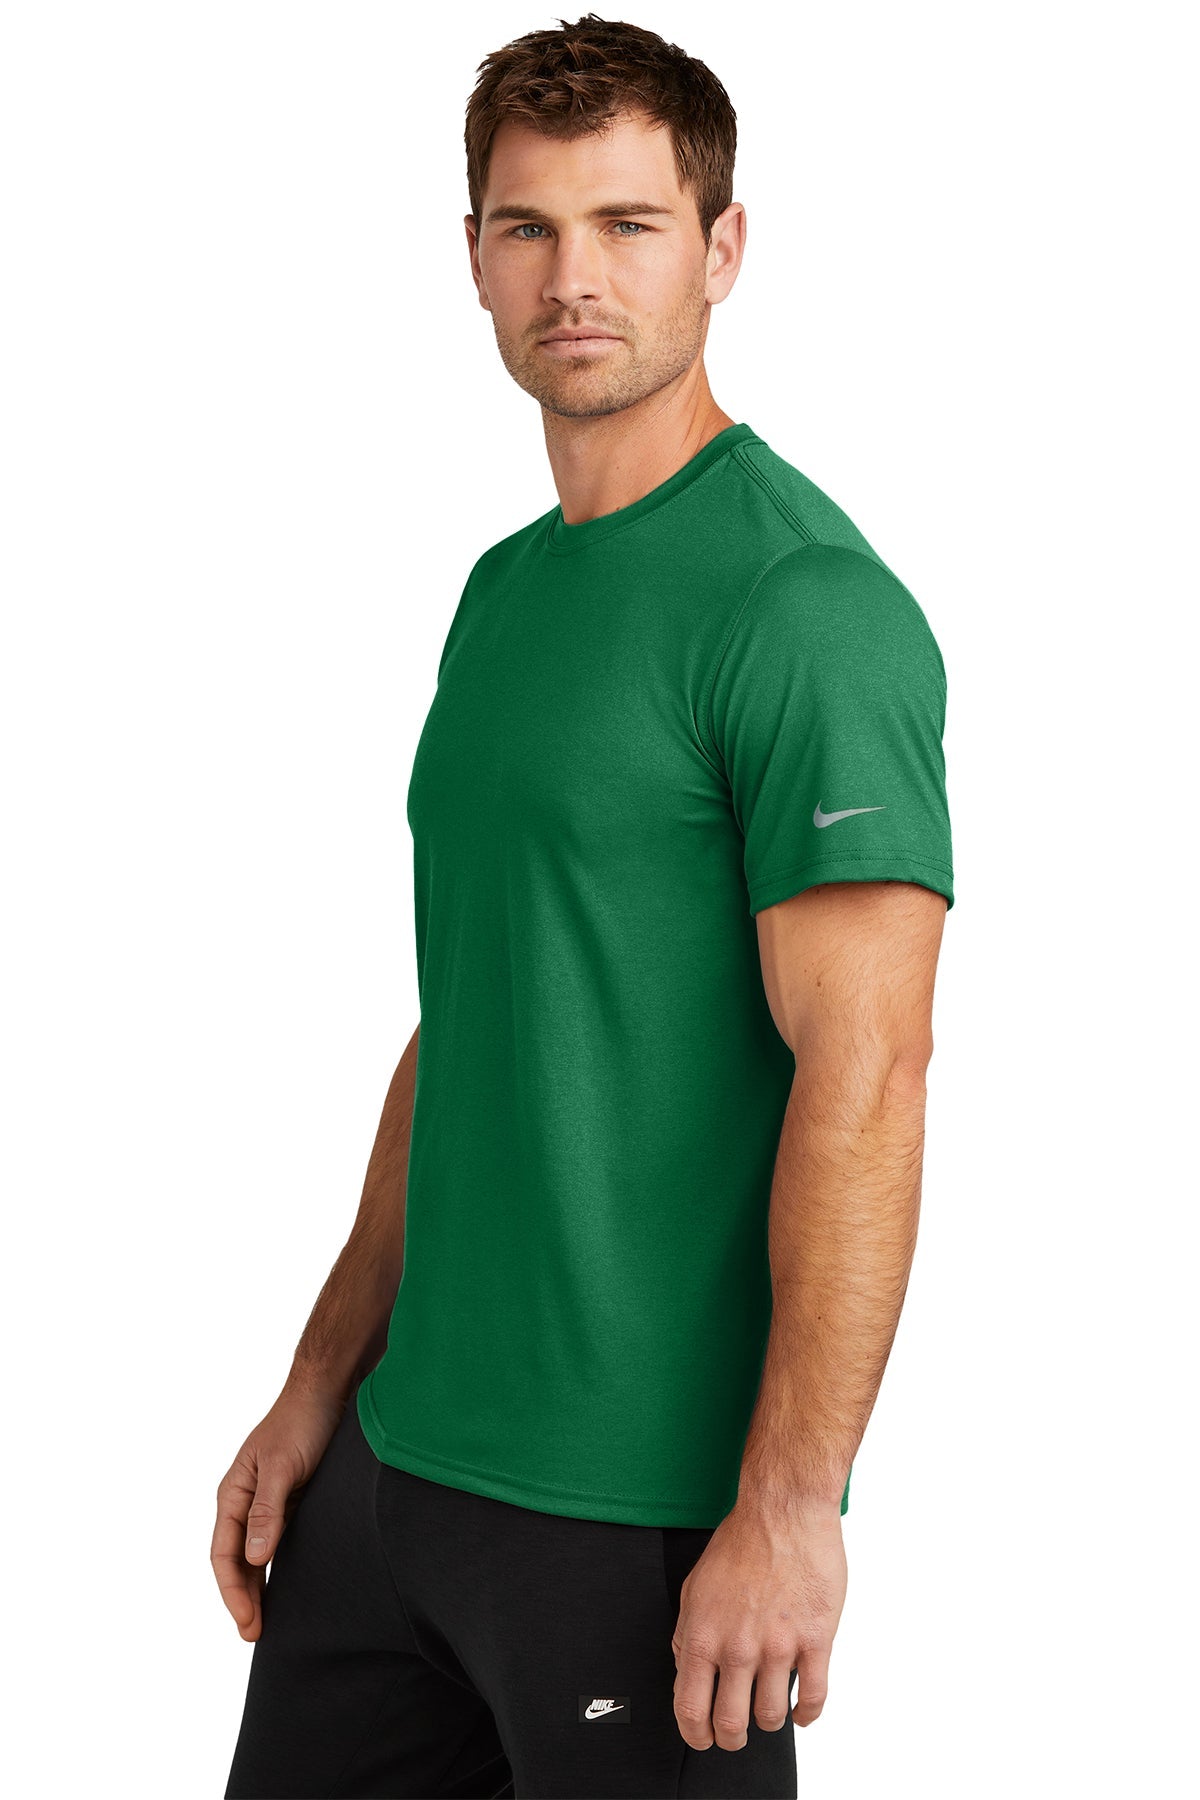 Nike Swoosh Sleeve rLegend Customized Tee's, Gorge Green